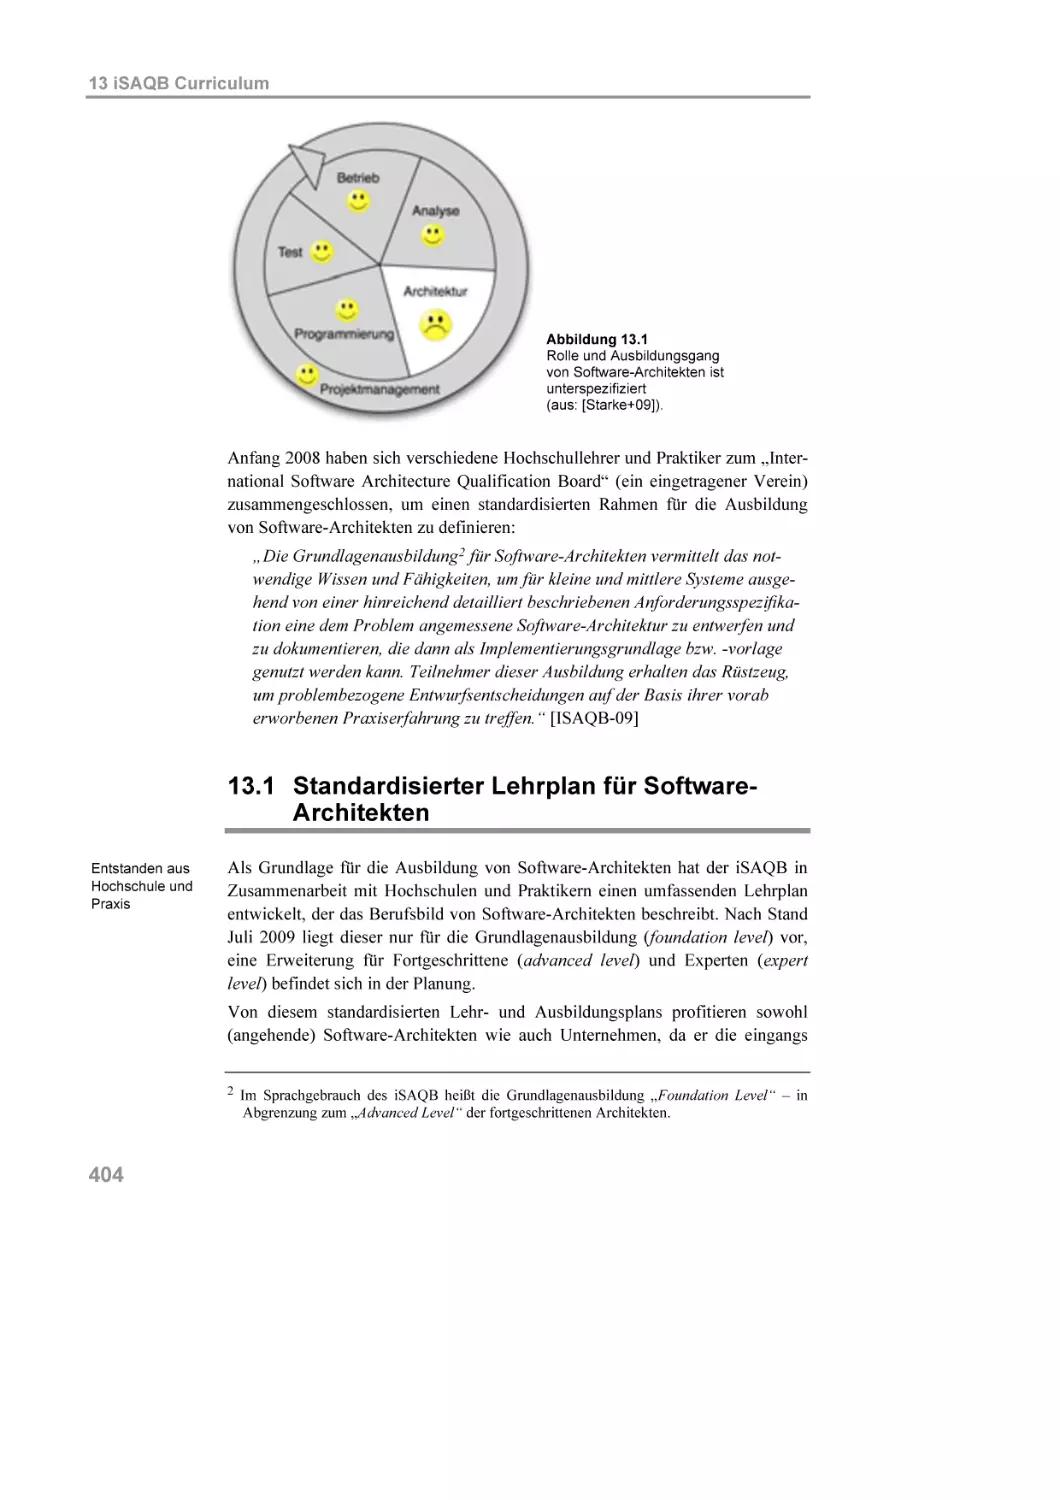 13.1 Standardisierter Lehrplan für Software-Architekten